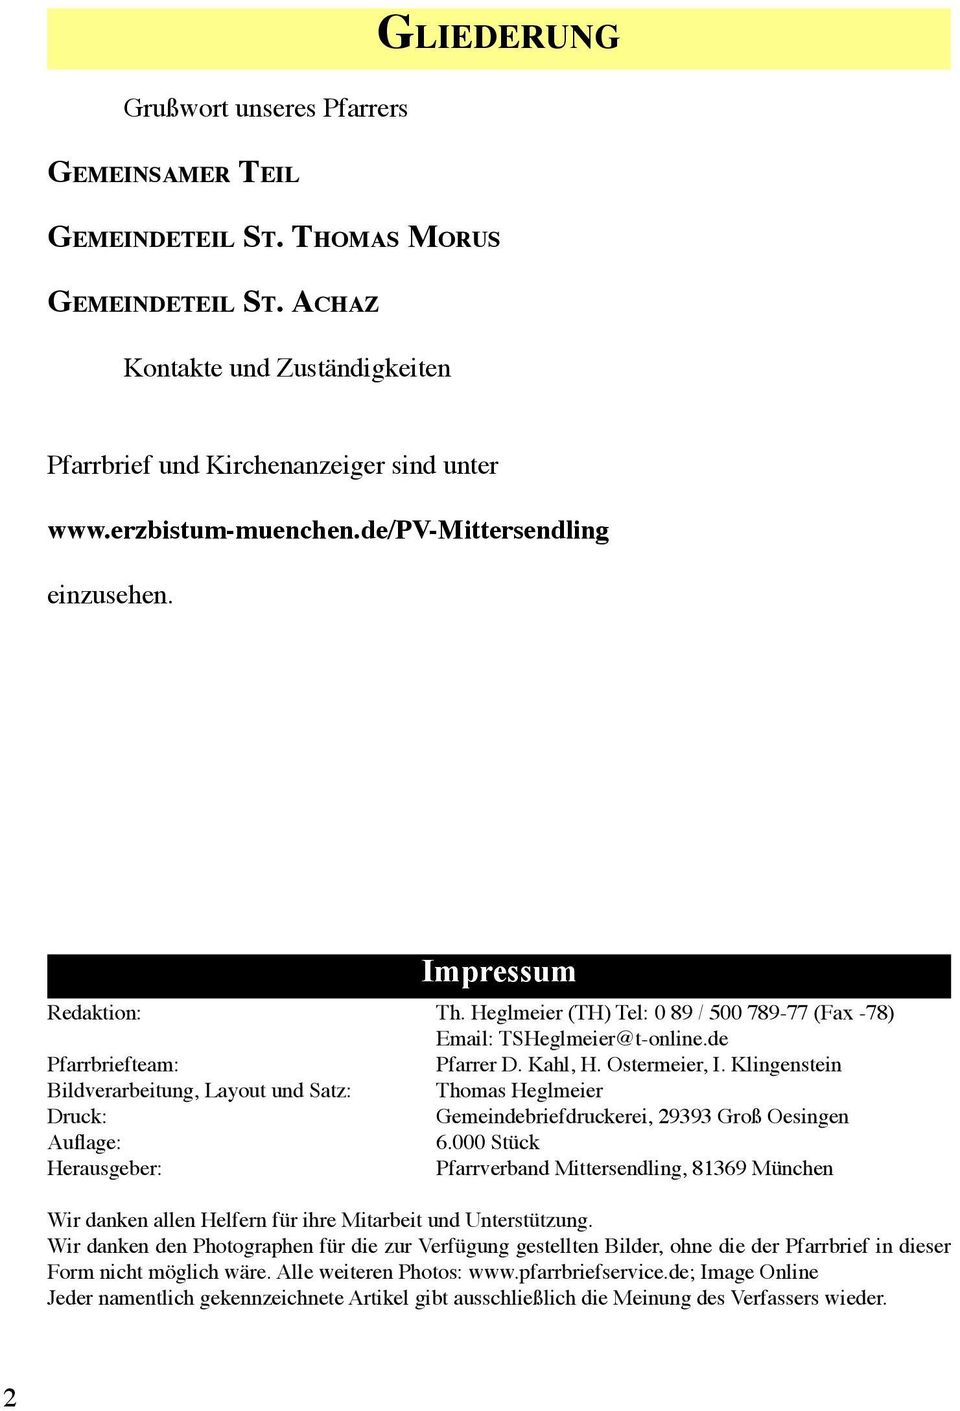 Ostermeier, I. Klingenstein Bildverarbeitung, Layout und Satz: Thomas Heglmeier Druck: Gemeindebriefdruckerei, 29393 Groß Oesingen Auflage: 6.